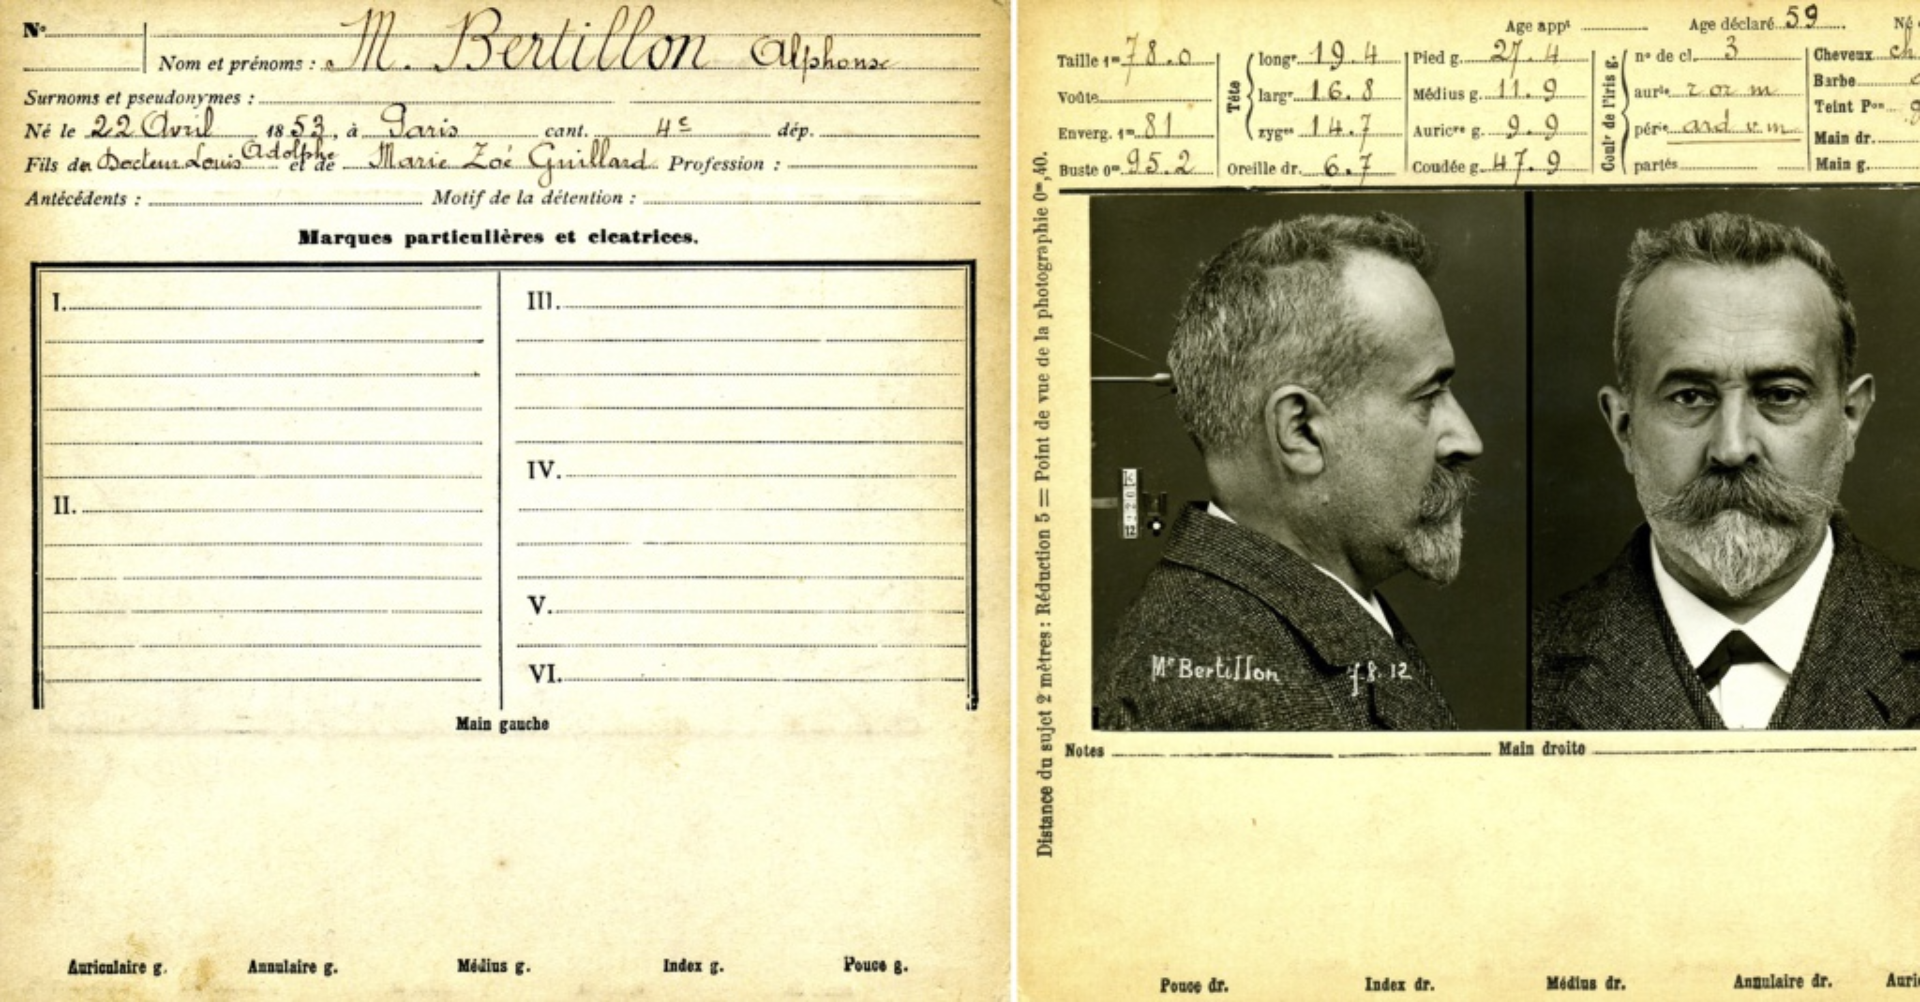 Википедия // Альфонс Бертильон (1853–1914), изобретатель  бертильонажа — системы идентификации преступников по антропометрическим данным. Сегодня в точности распознавания лиц компьютеры уже значительно превосходят людей